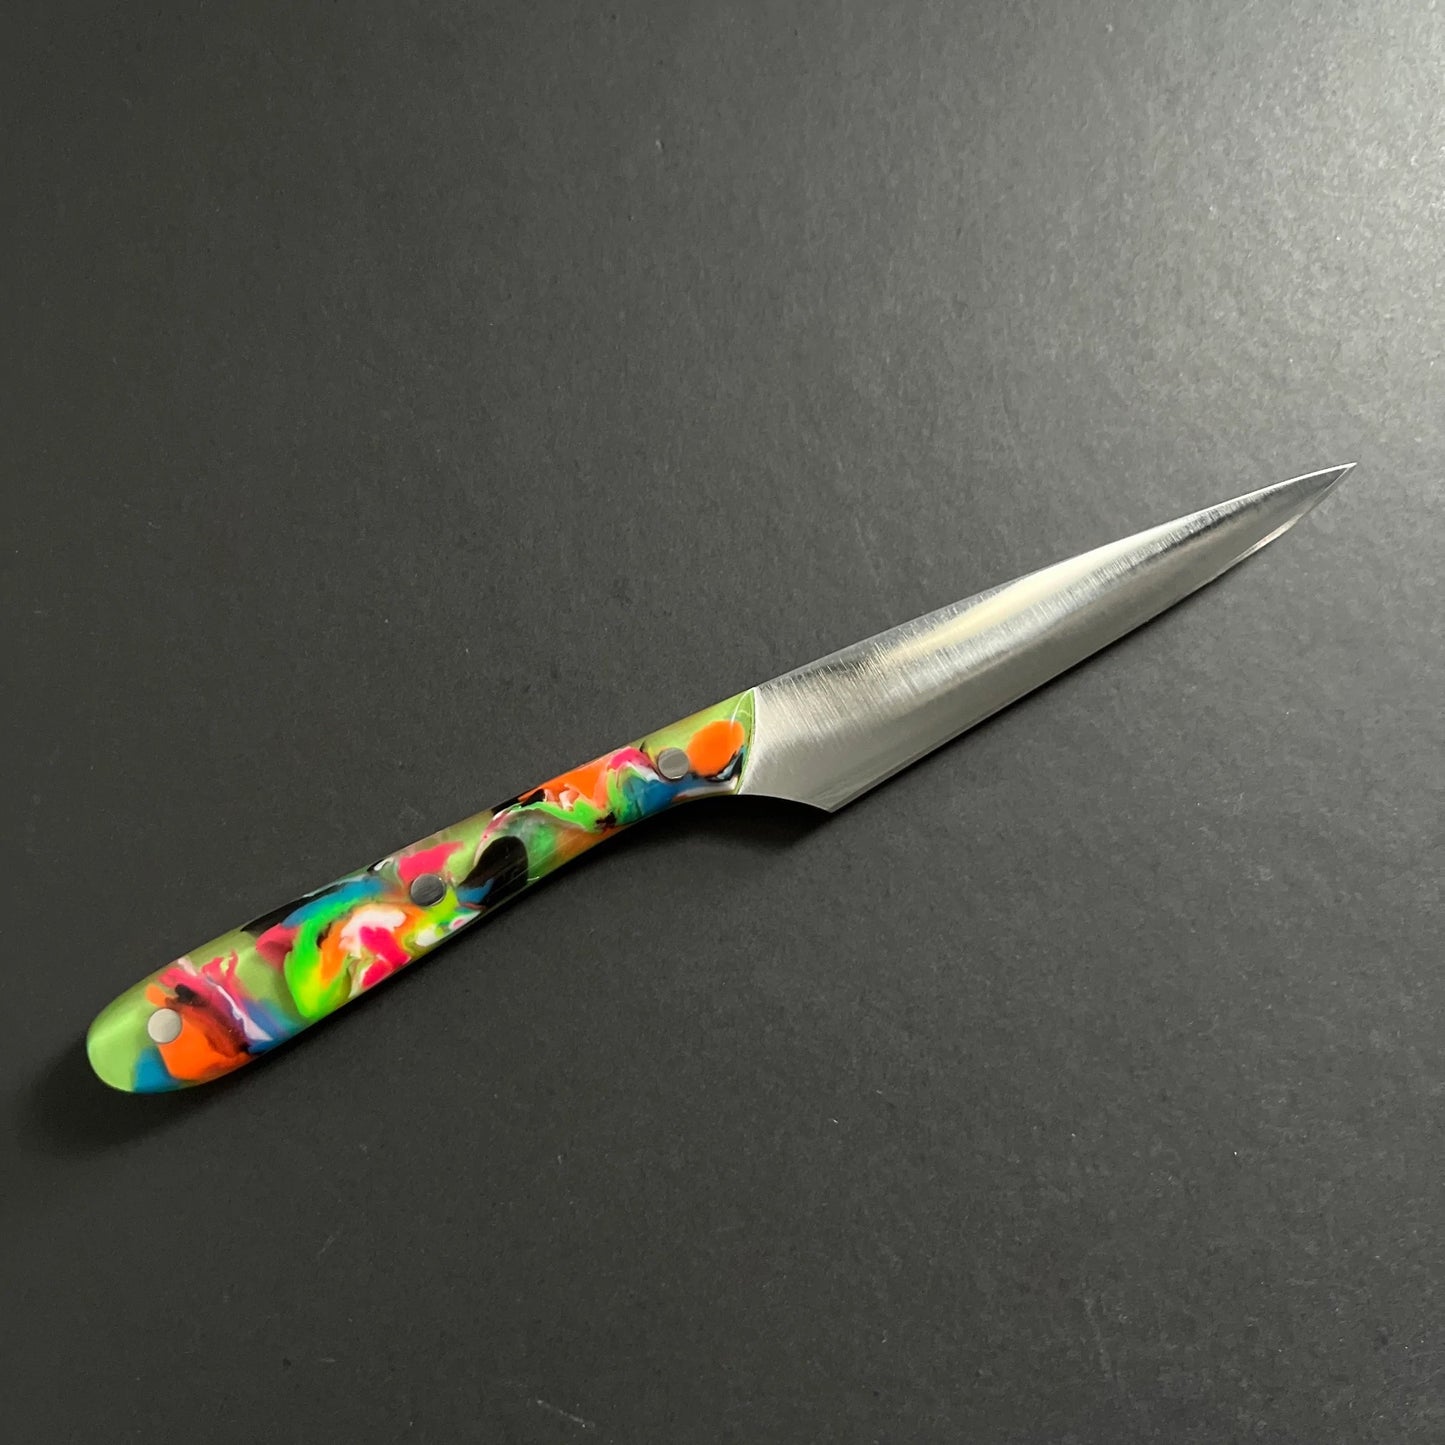 Skarpari Customized 3.5" Paring Knife